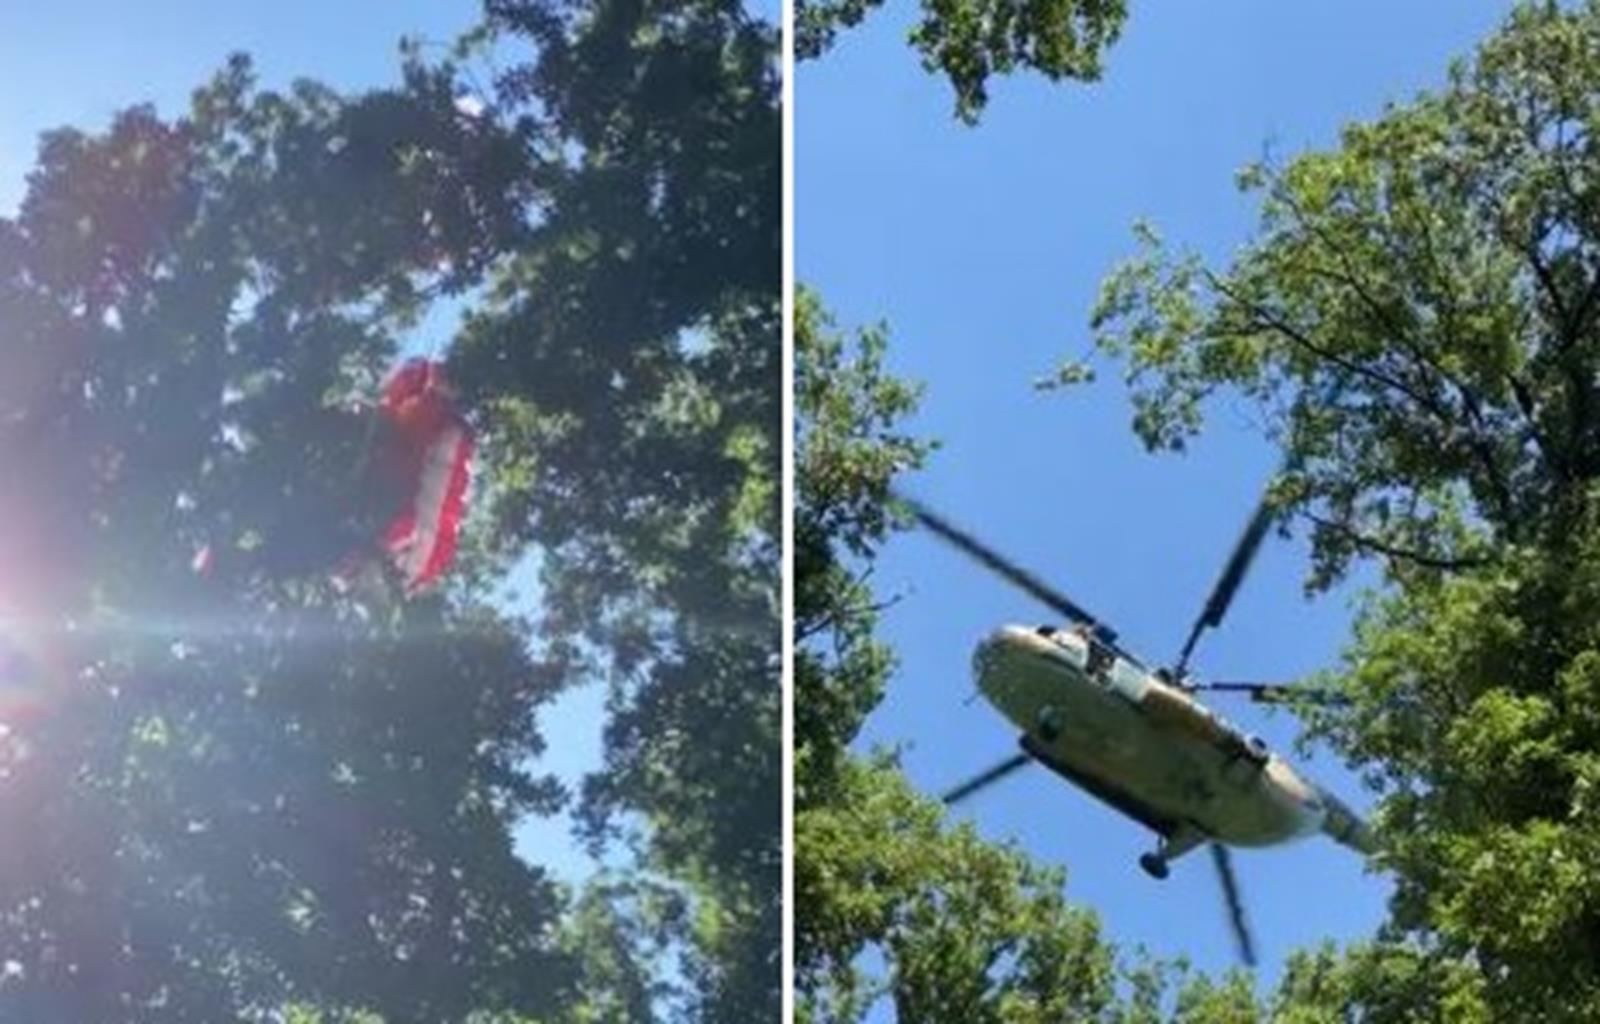 Fán akadt egy siklóernyős, de sértetlenül megúszta, majd jött a mentőhelikopter és 20 métert zuhant a rotorszele miatt